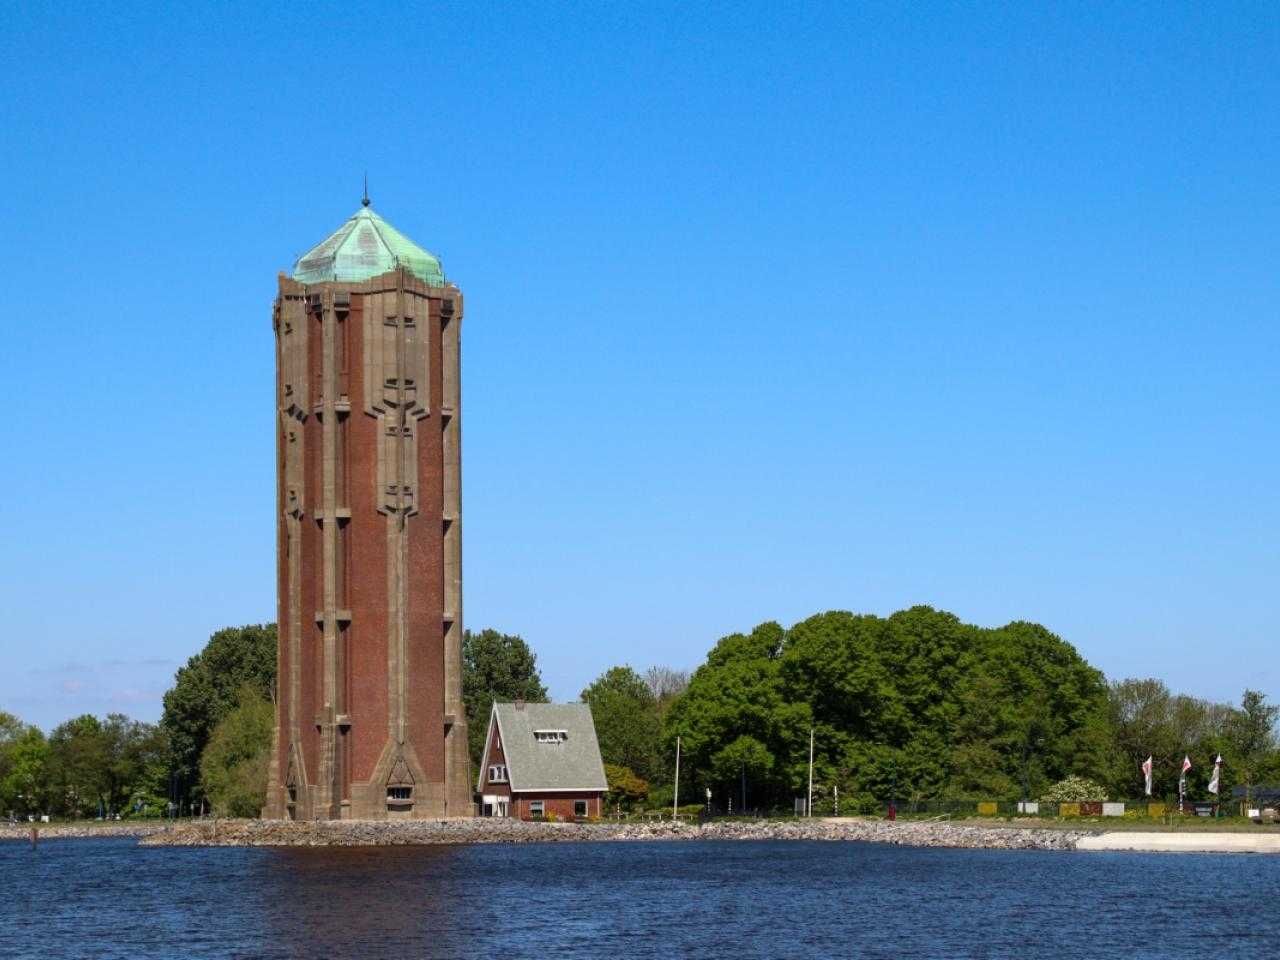 Watertoren Aalsmeer